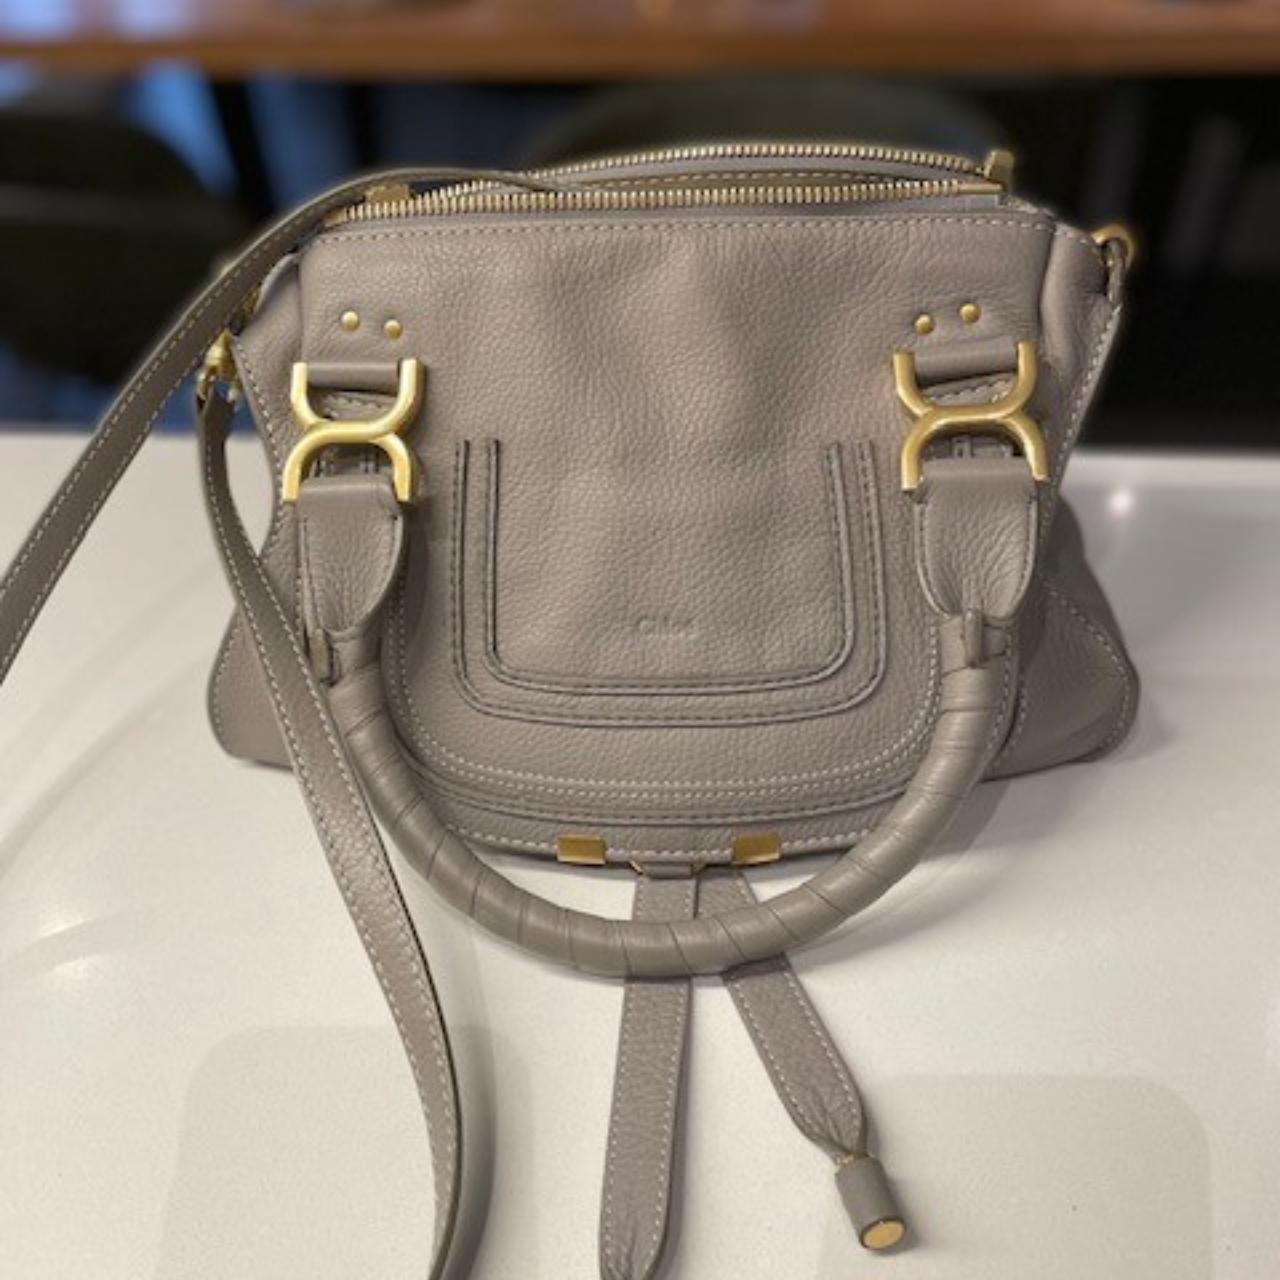 Chloe Marcie bag (Small) in textured... - Depop